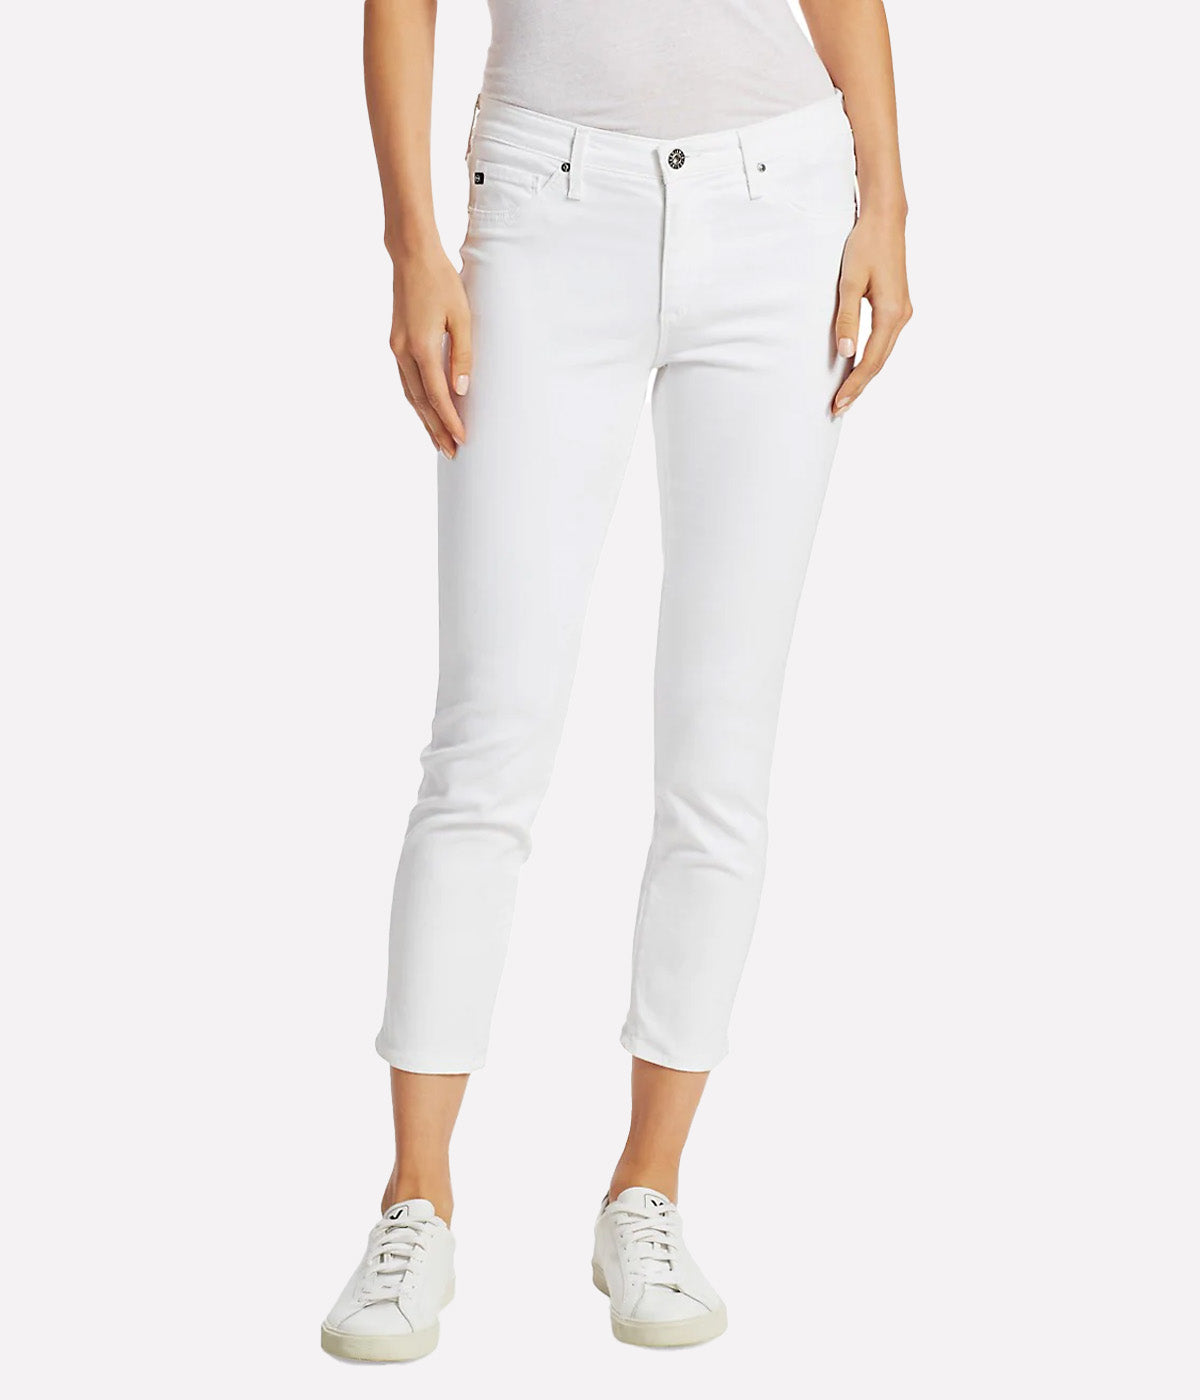 The Prima Crop Jean in White